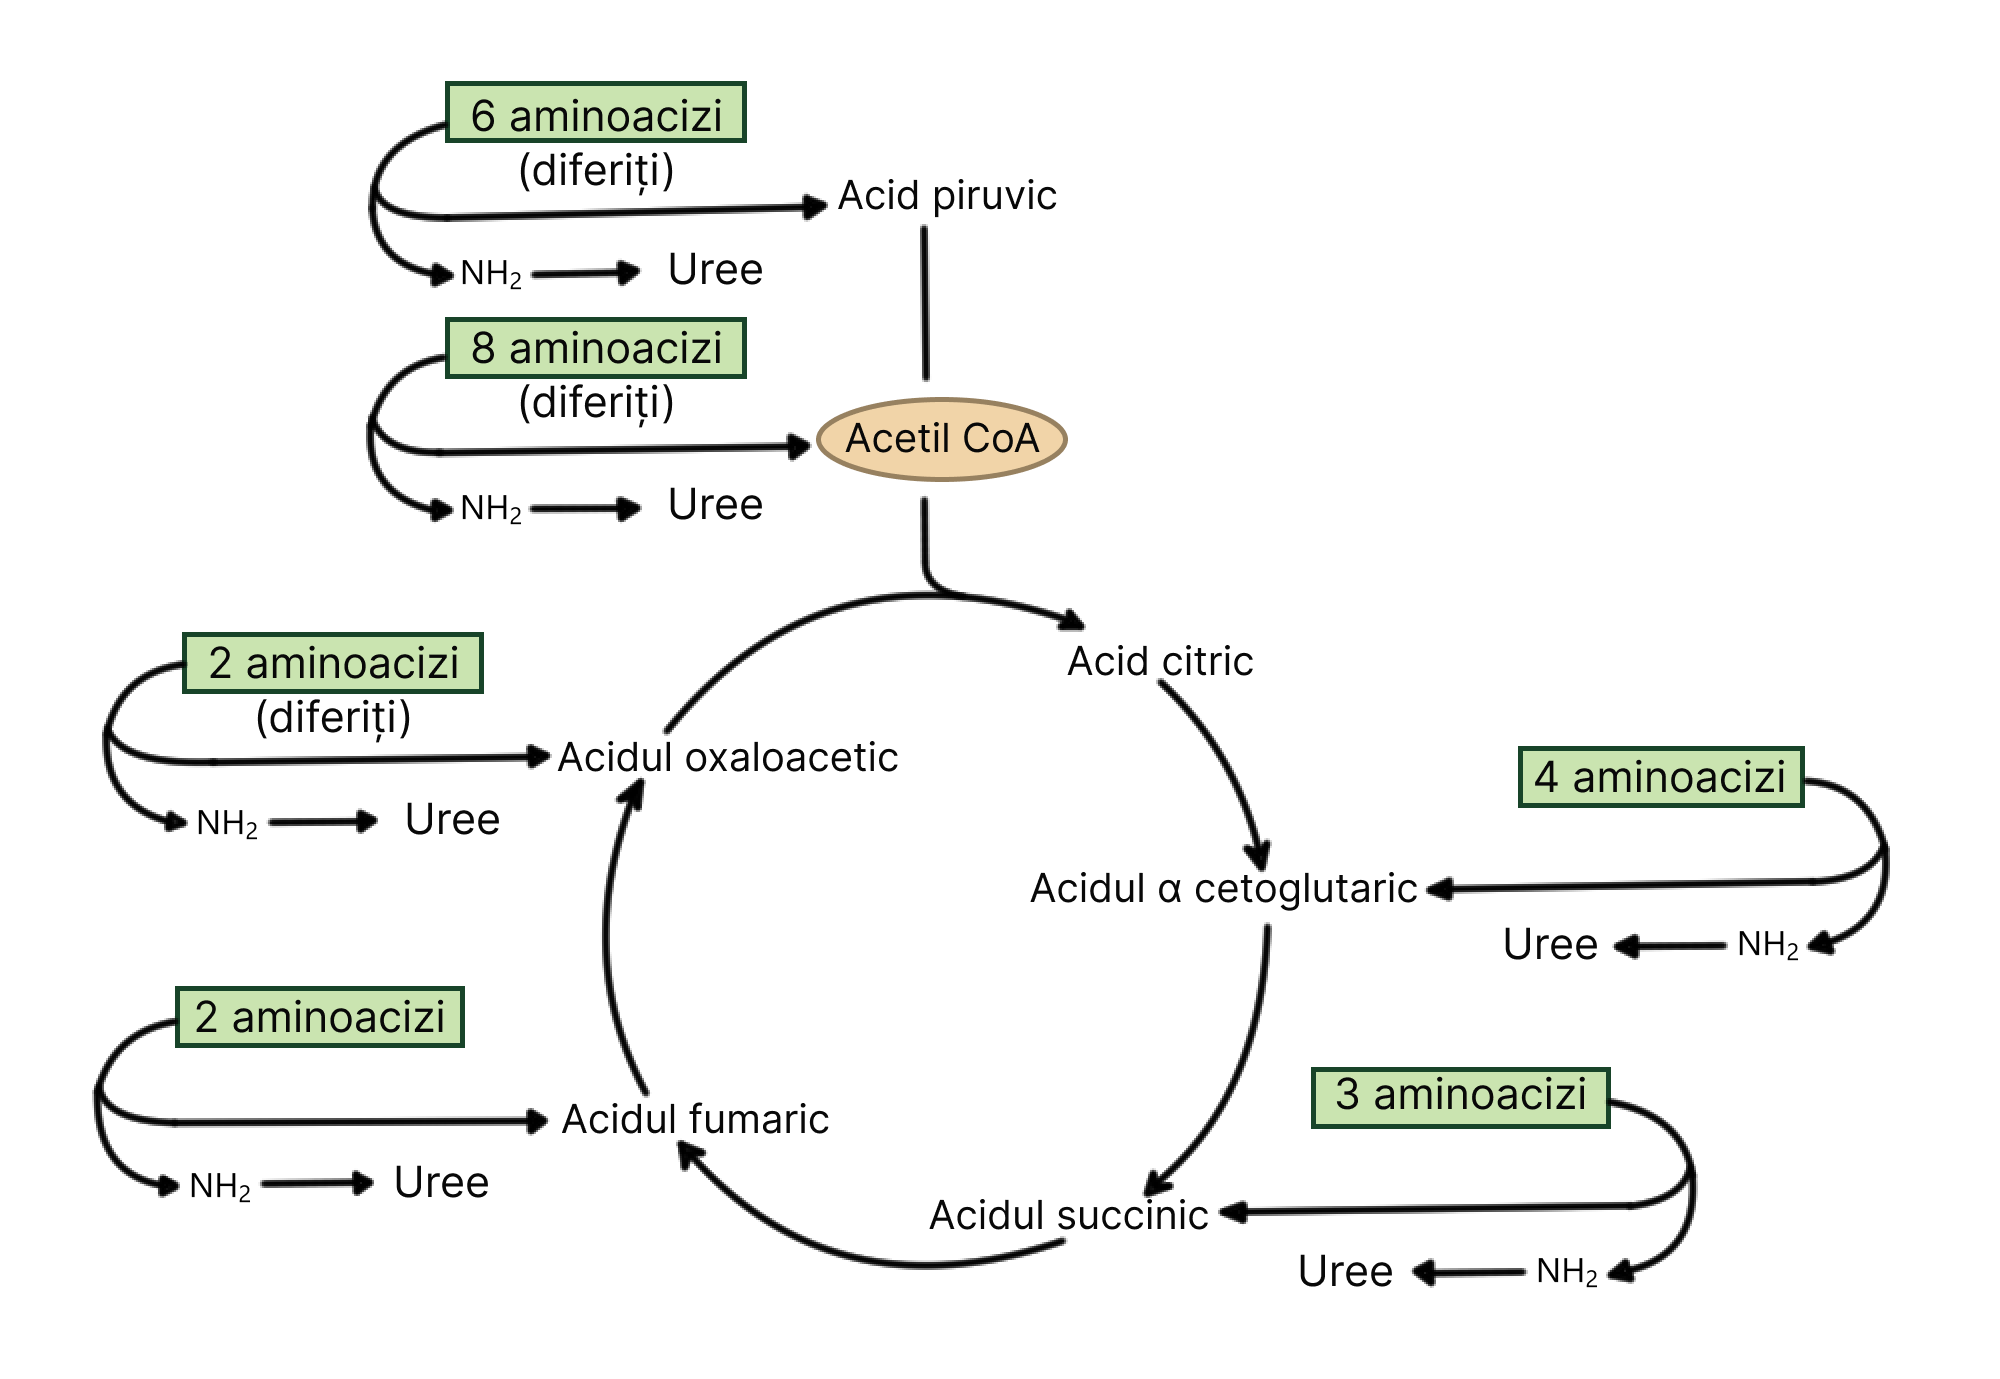 Transformări variate ale unor aminoacizi diferiți din care rezultă uree din fiecare conversie.